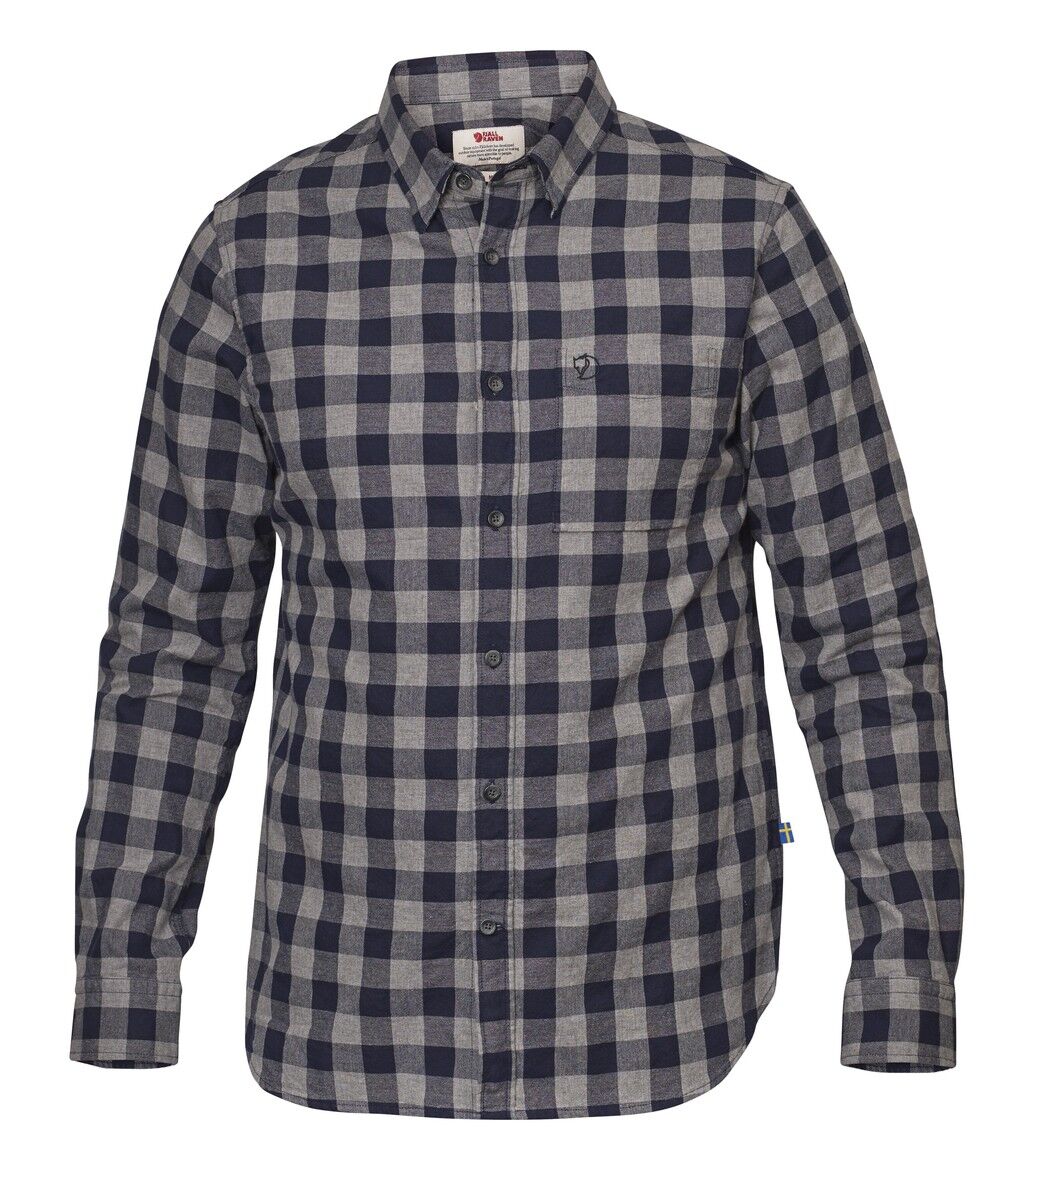 Fjällräven - Övik Check Shirt LS - Camisa - Hombre